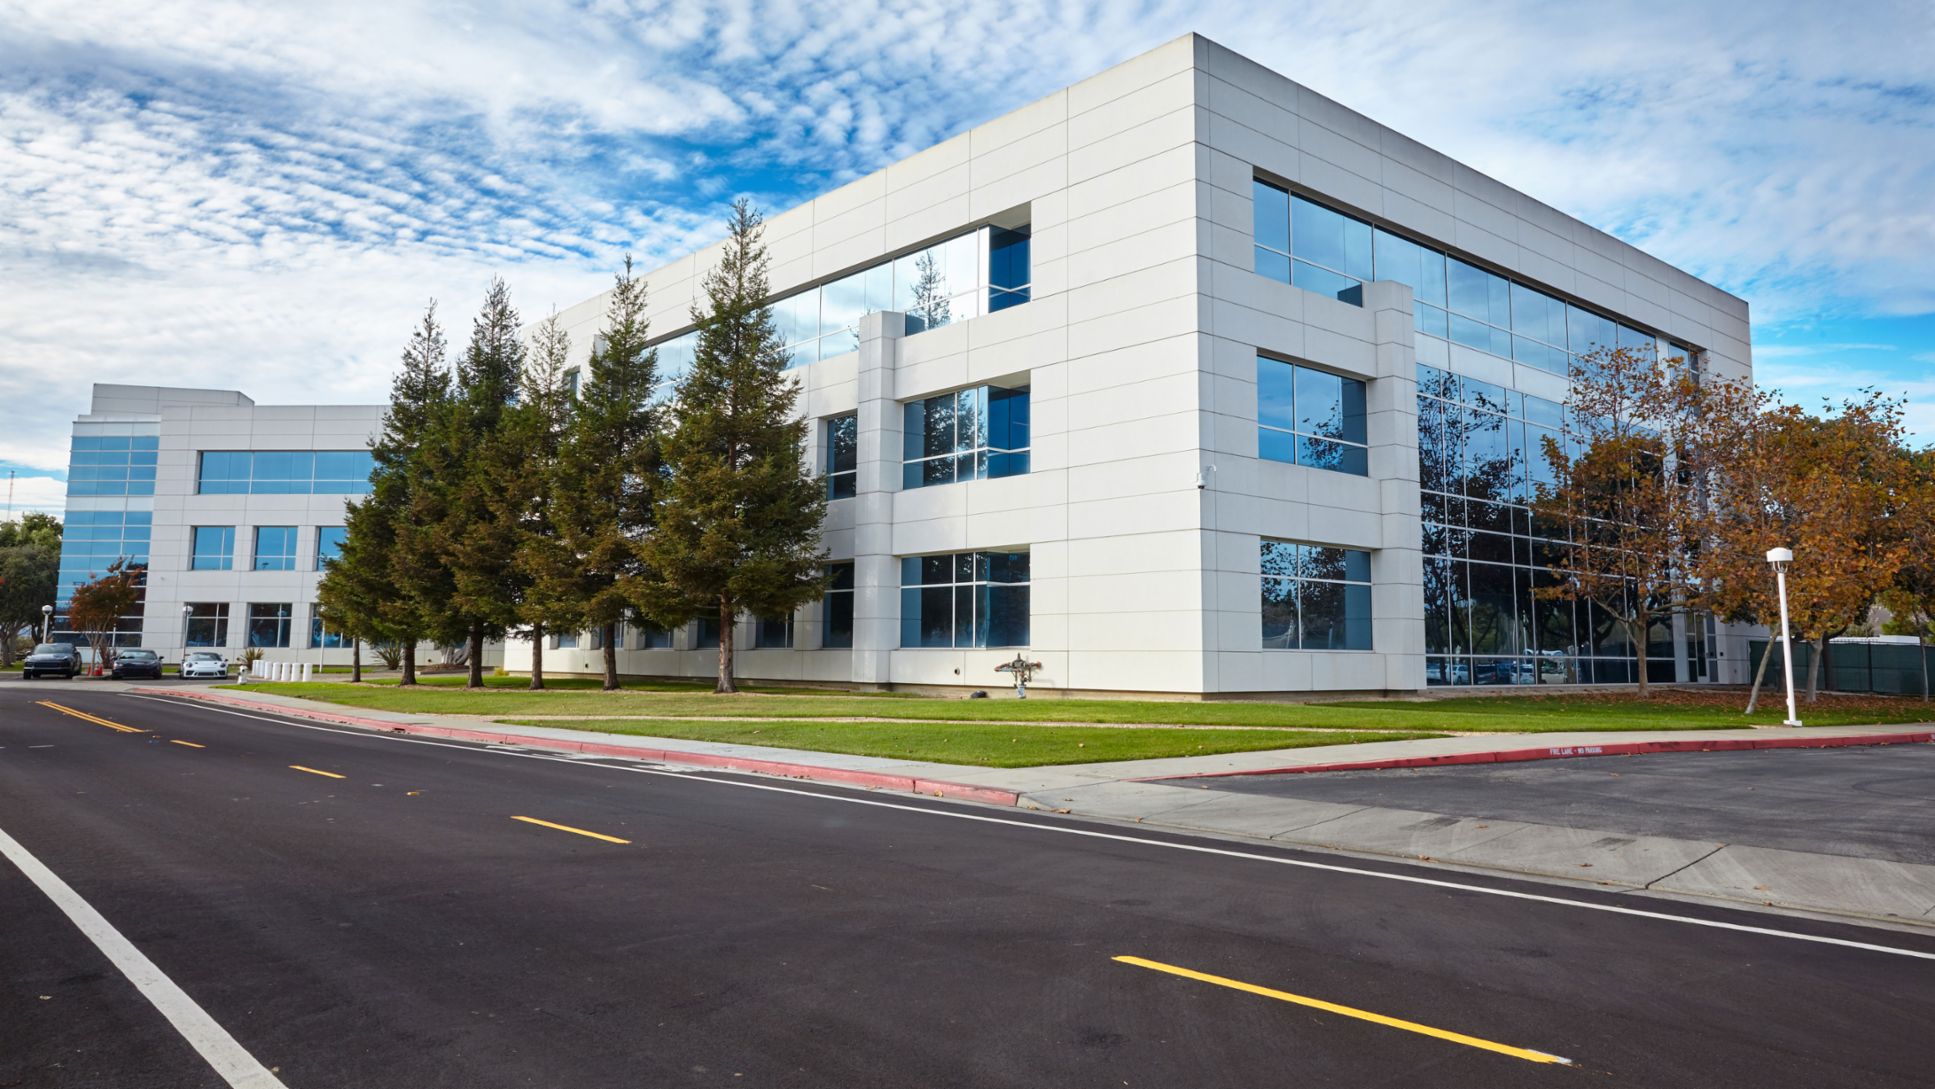 Porsche Consulting office, Belmont, California, Silicon Valley, 2018, Porsche Consulting GmbH